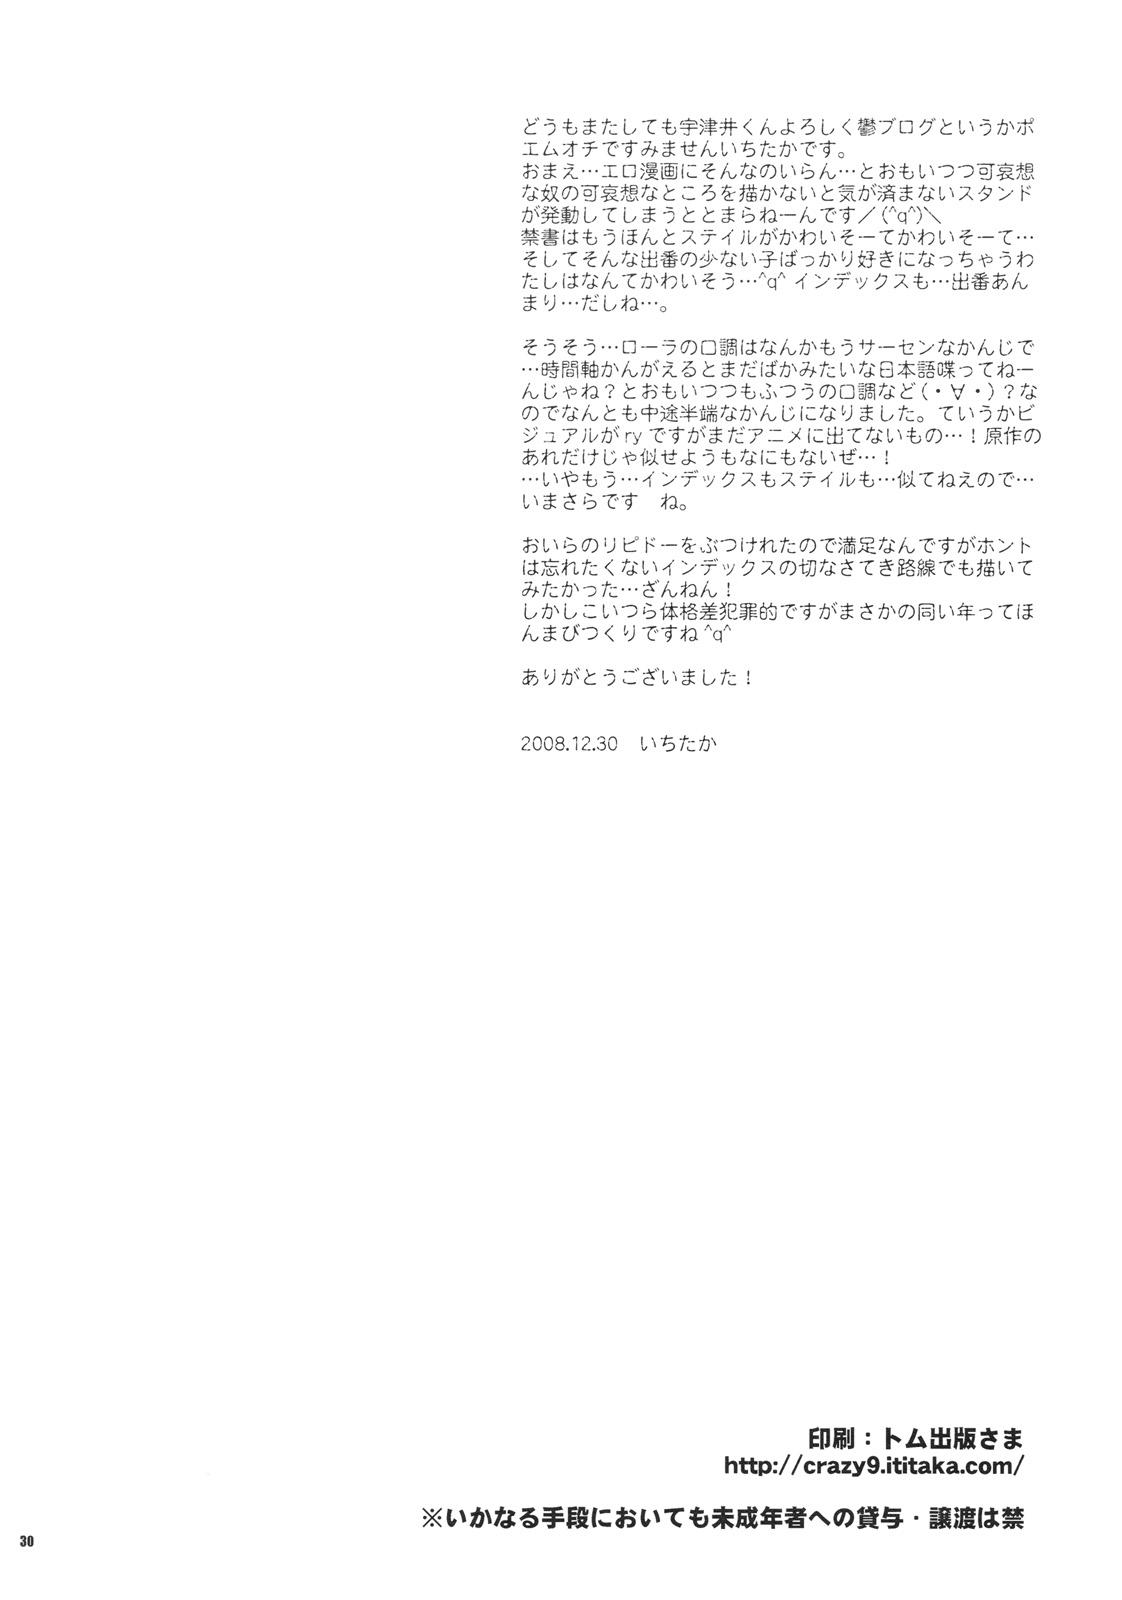 Wet Saigo no Yoru ni - Toaru majutsu no index Webcamchat - Page 29